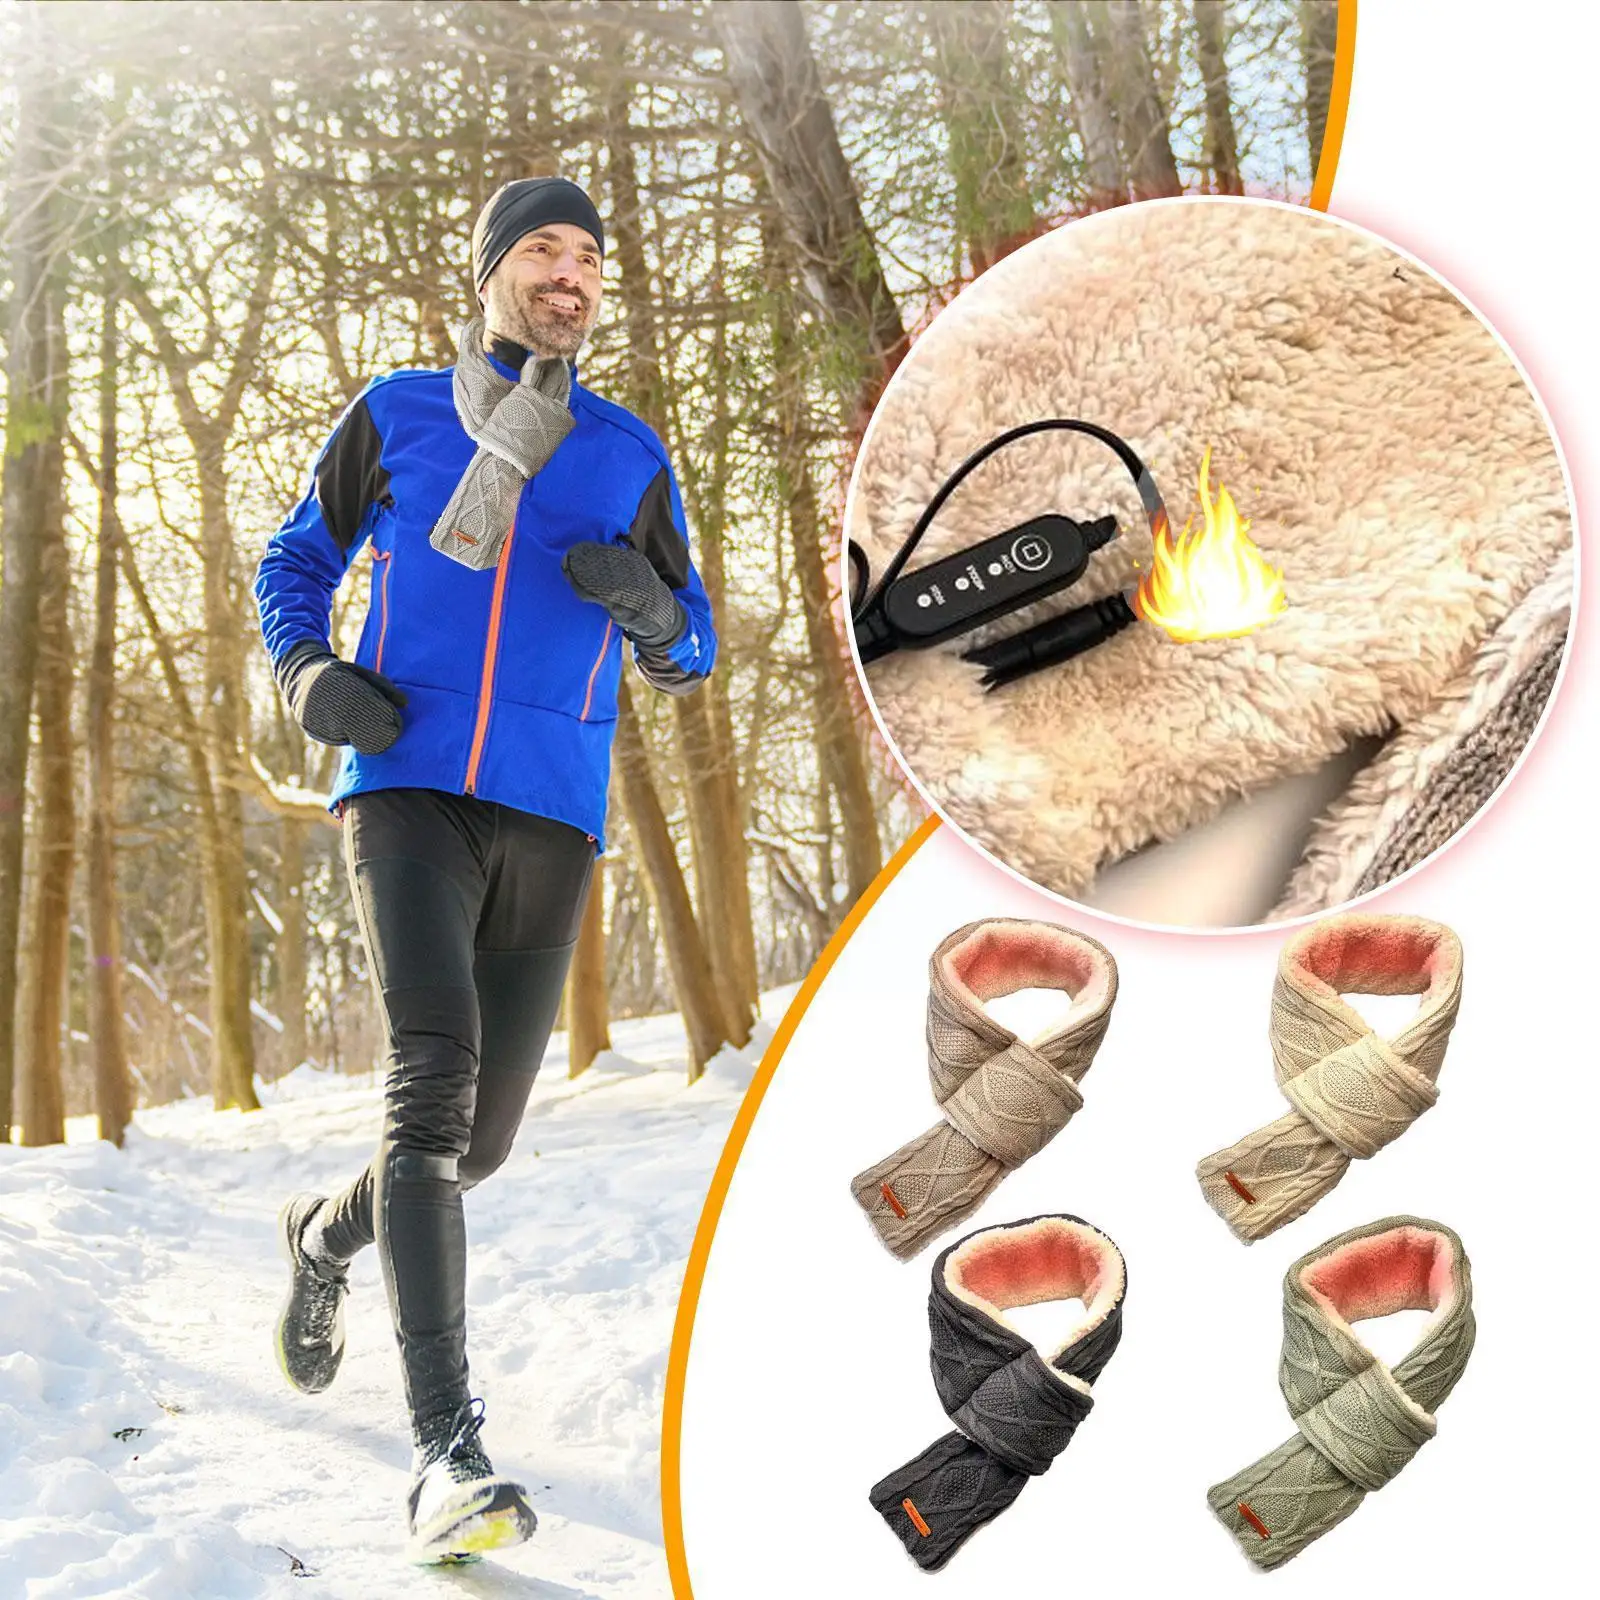 

Зимний шарф с USB-подогревом, 5 В, 3 уровня, Регулируемый шарф с электрическим подогревом, шейный теплый вязаный шарф для активного отдыха, велоспорта, кемпинга R5X6